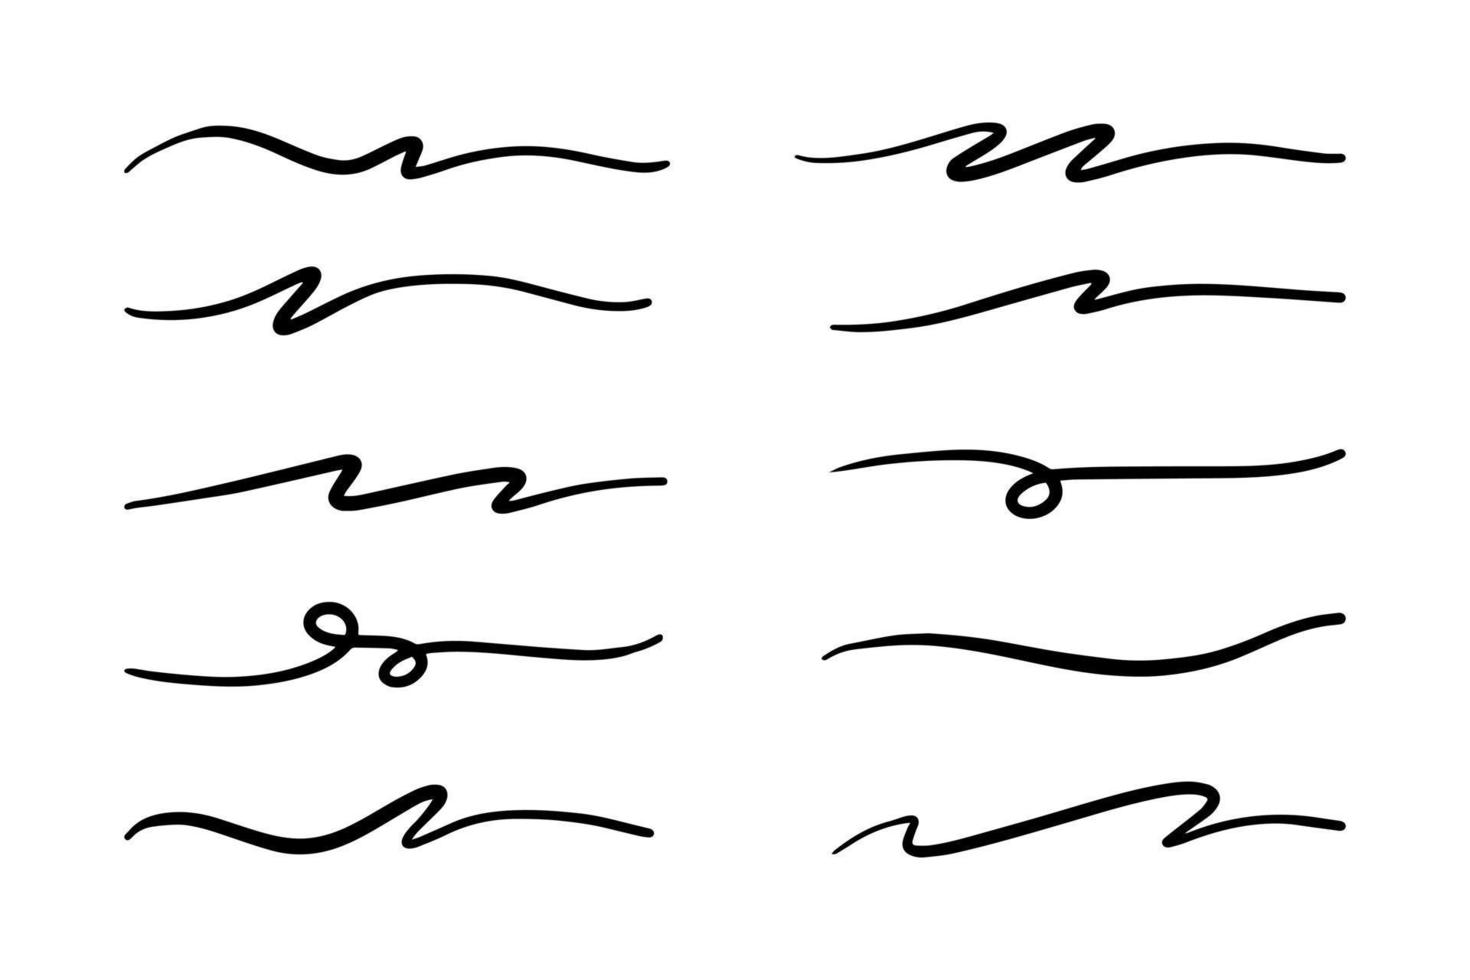 strokes, underlines, highlighter marker strokes, wave brush marks. vector